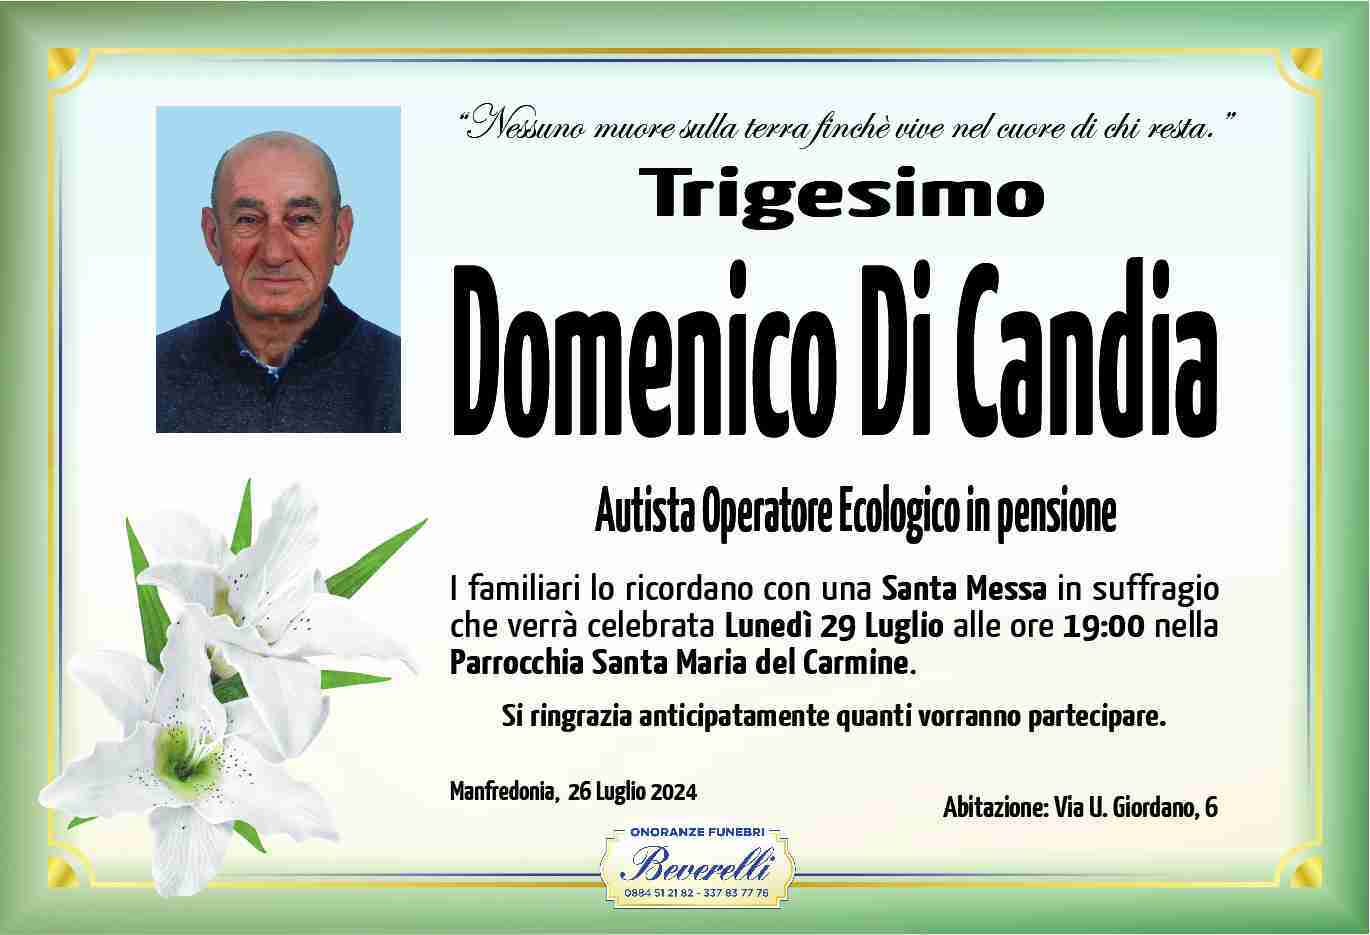 Domenico Di Candia